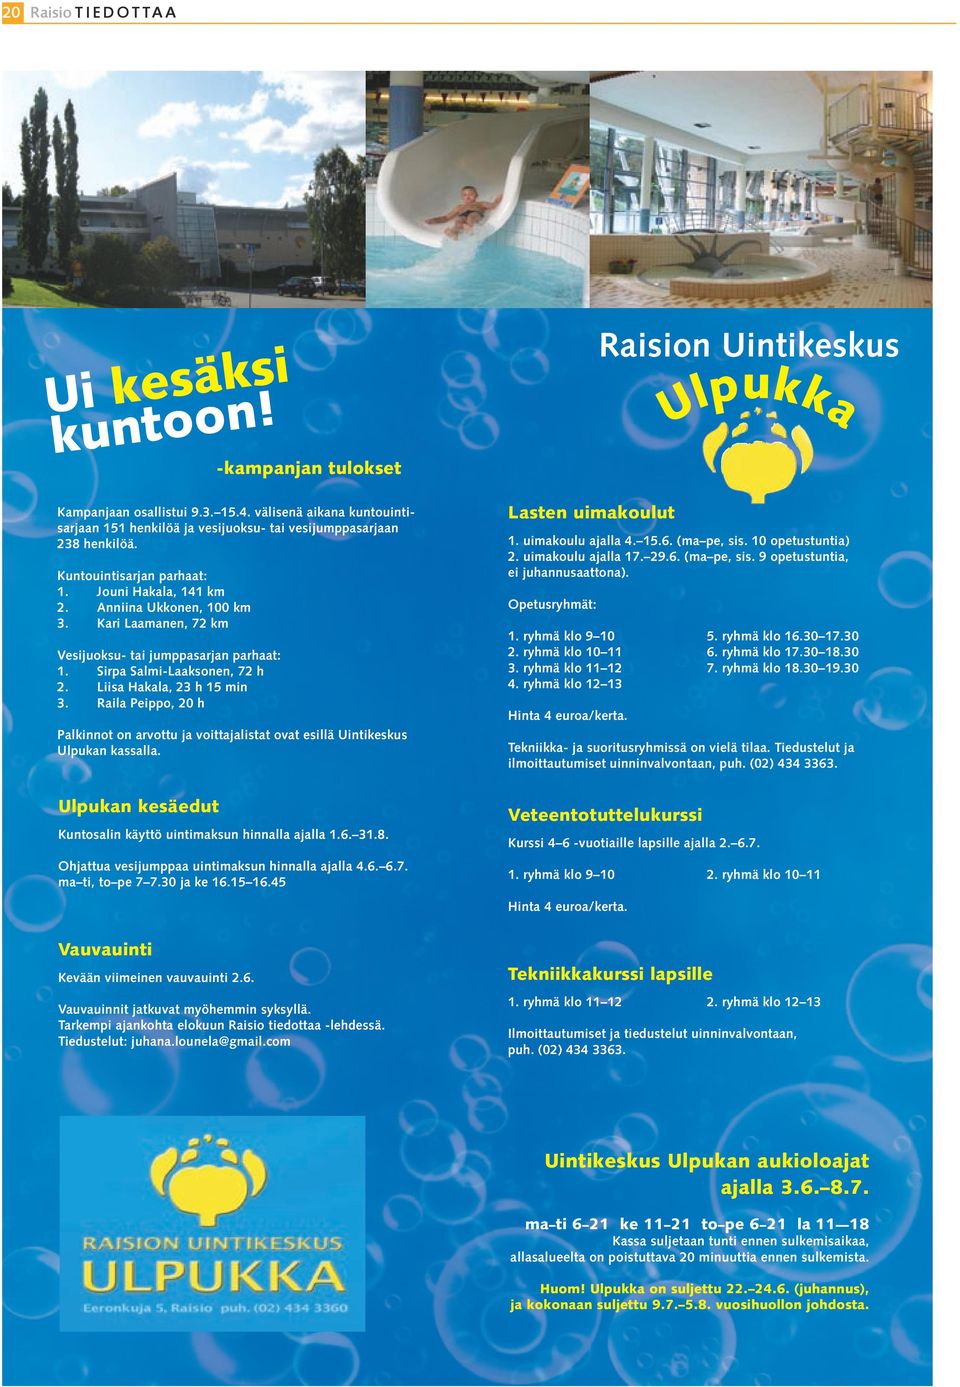 Liisa Hakala, 23 h 15 min 3. Raila Peippo, 20 h Palkinnot on arvottu ja voittajalistat ovat esillä Uintikeskus Ulpukan kassalla. Lasten uimakoulut 1. uimakoulu ajalla 4. 15.6. (ma pe, sis.